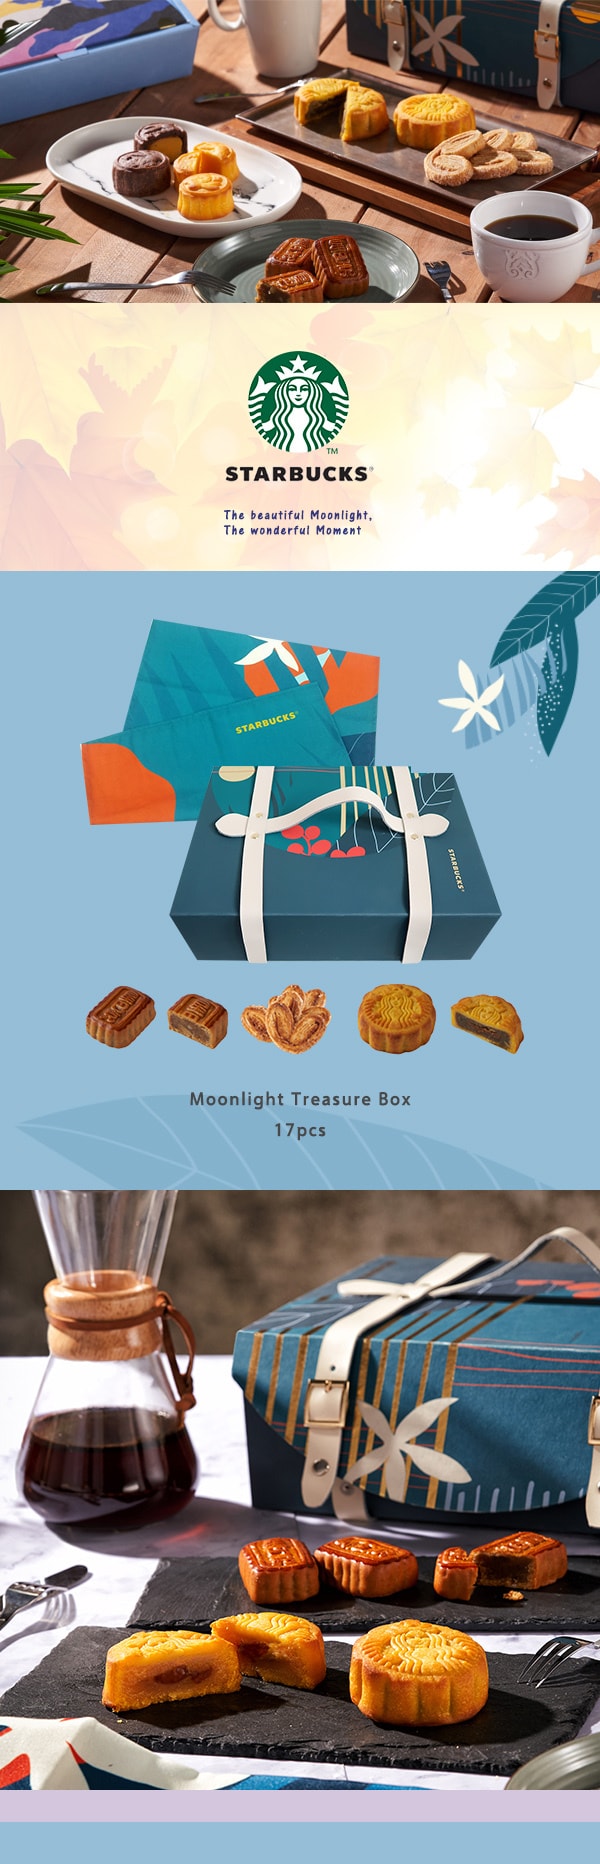 Moonlight Treasure Box 17pcs